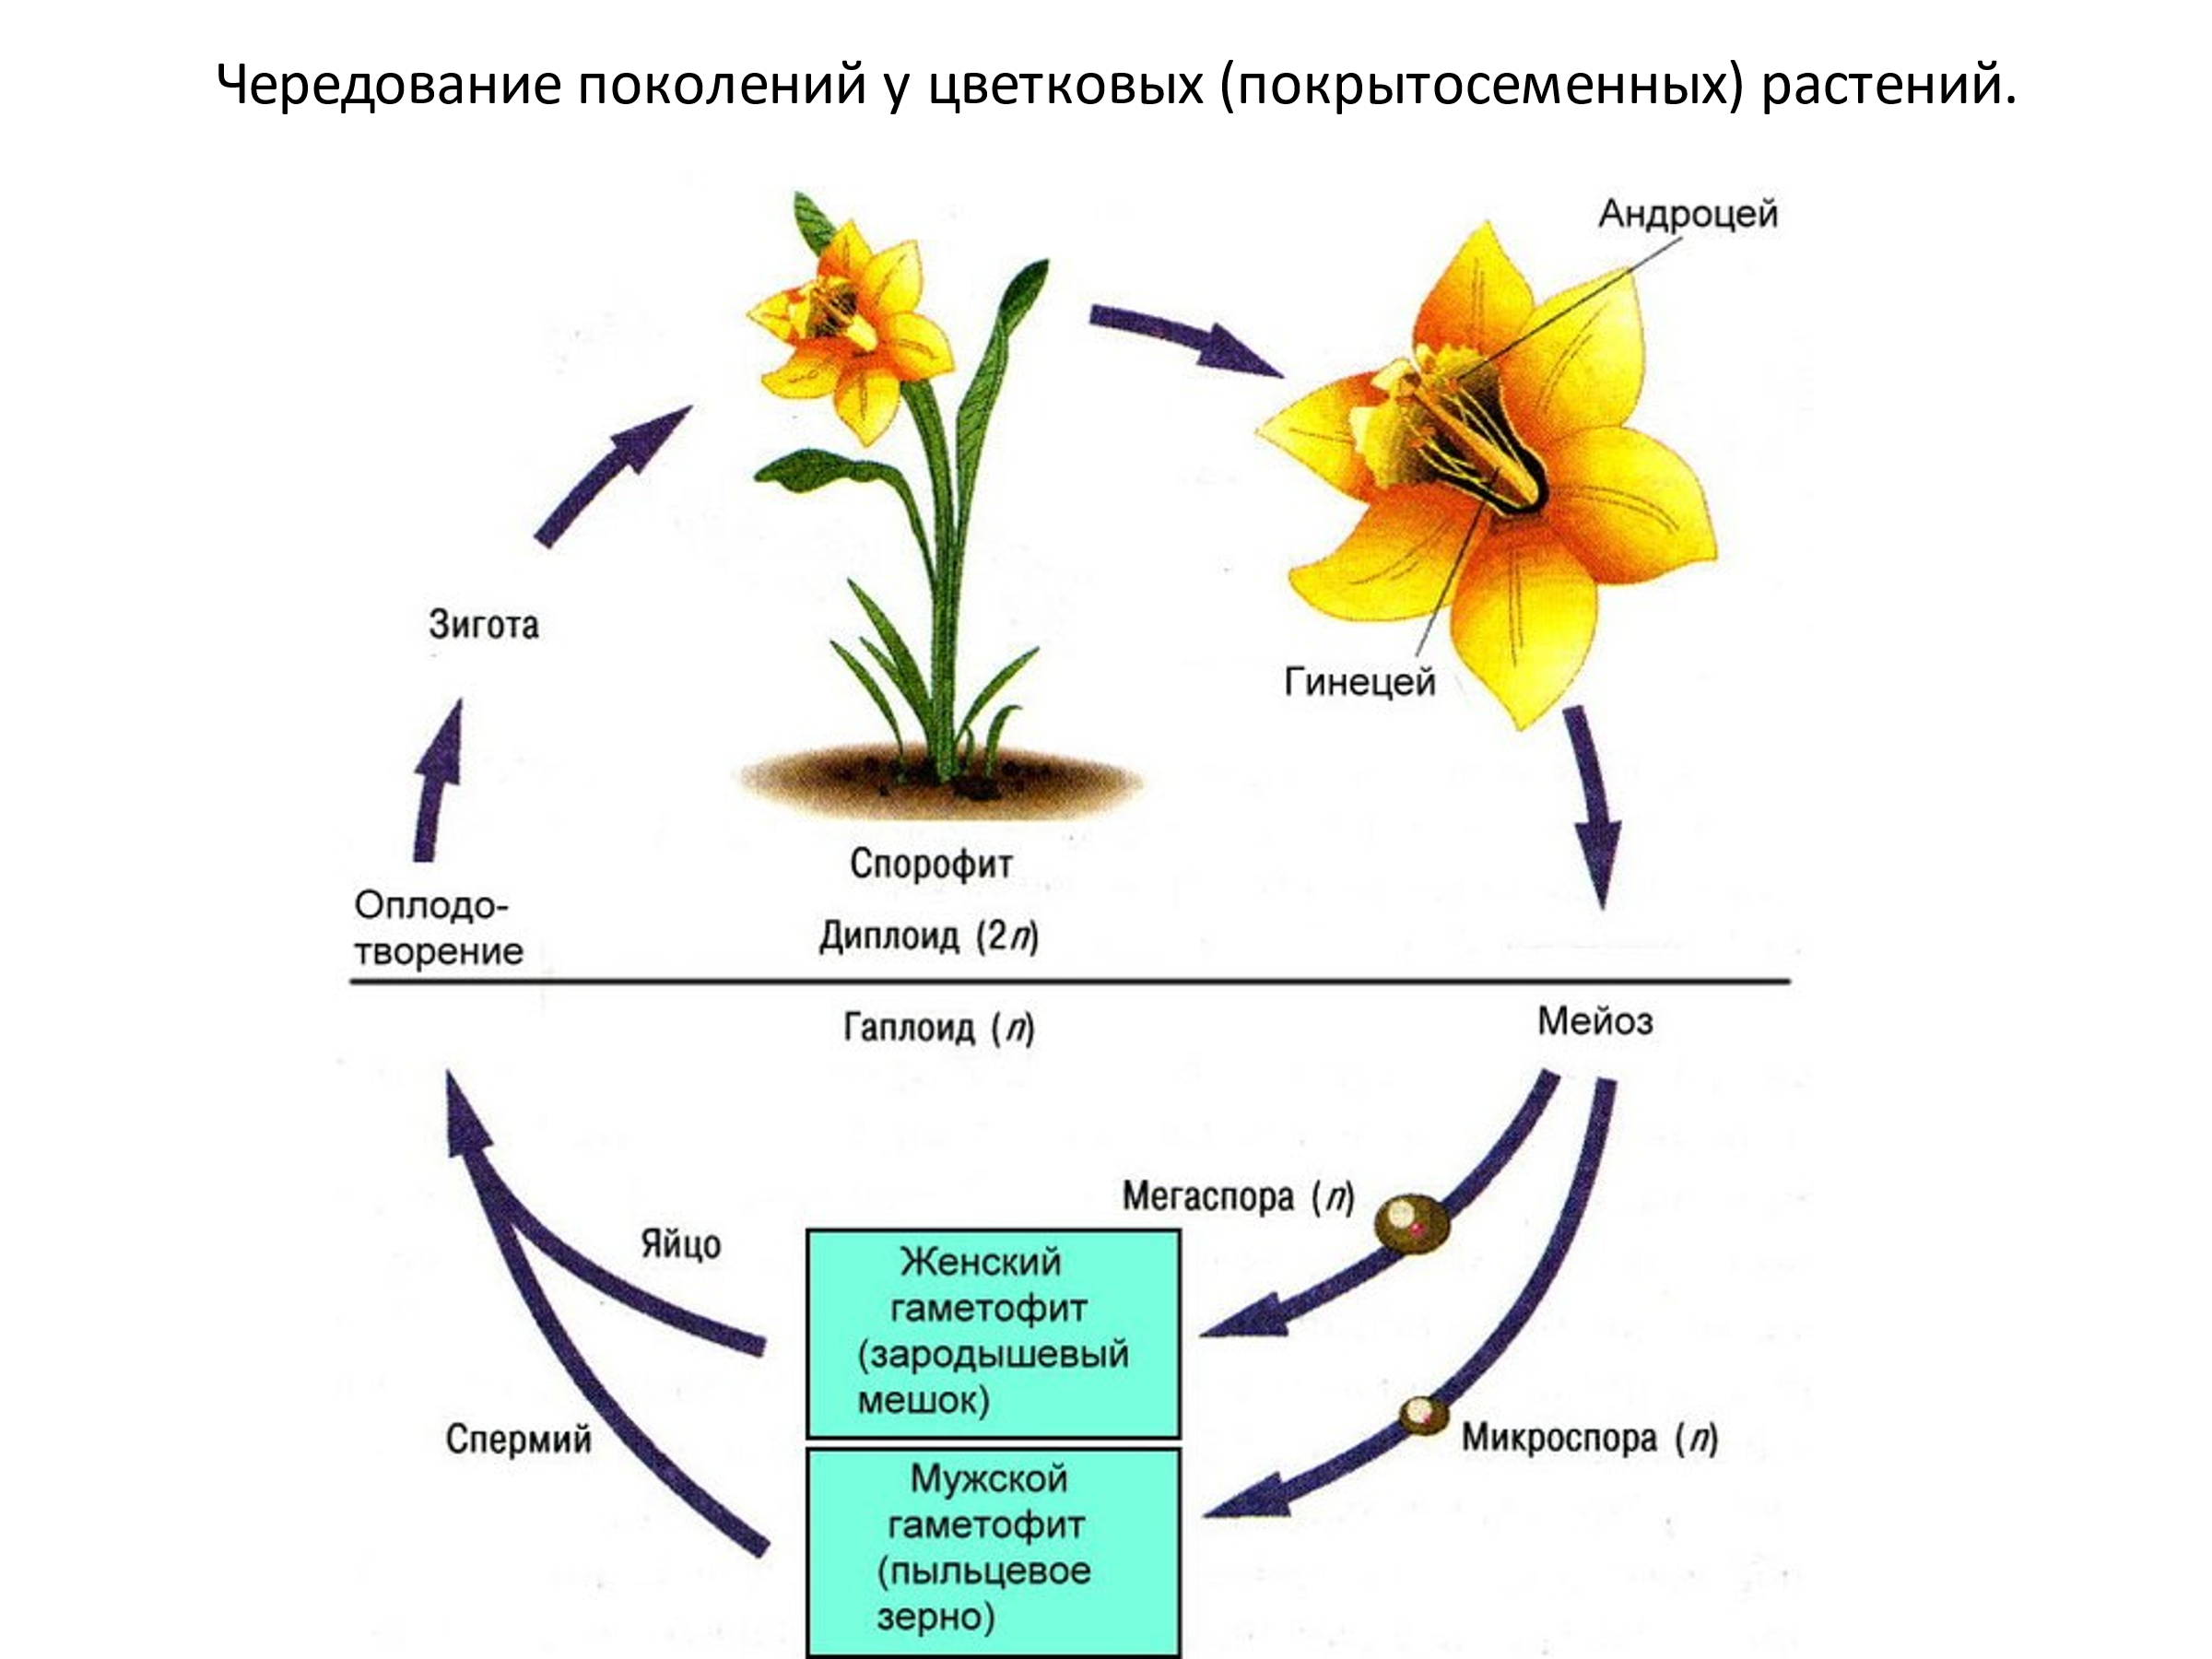 Жизненный цикл цветковых растений гаметофит. Стадии жизненного цикла цветковых растений. Цикл размножения покрытосеменных. Гаметофит и спорофит у покрытосеменных растений. Женский гаметофит образован